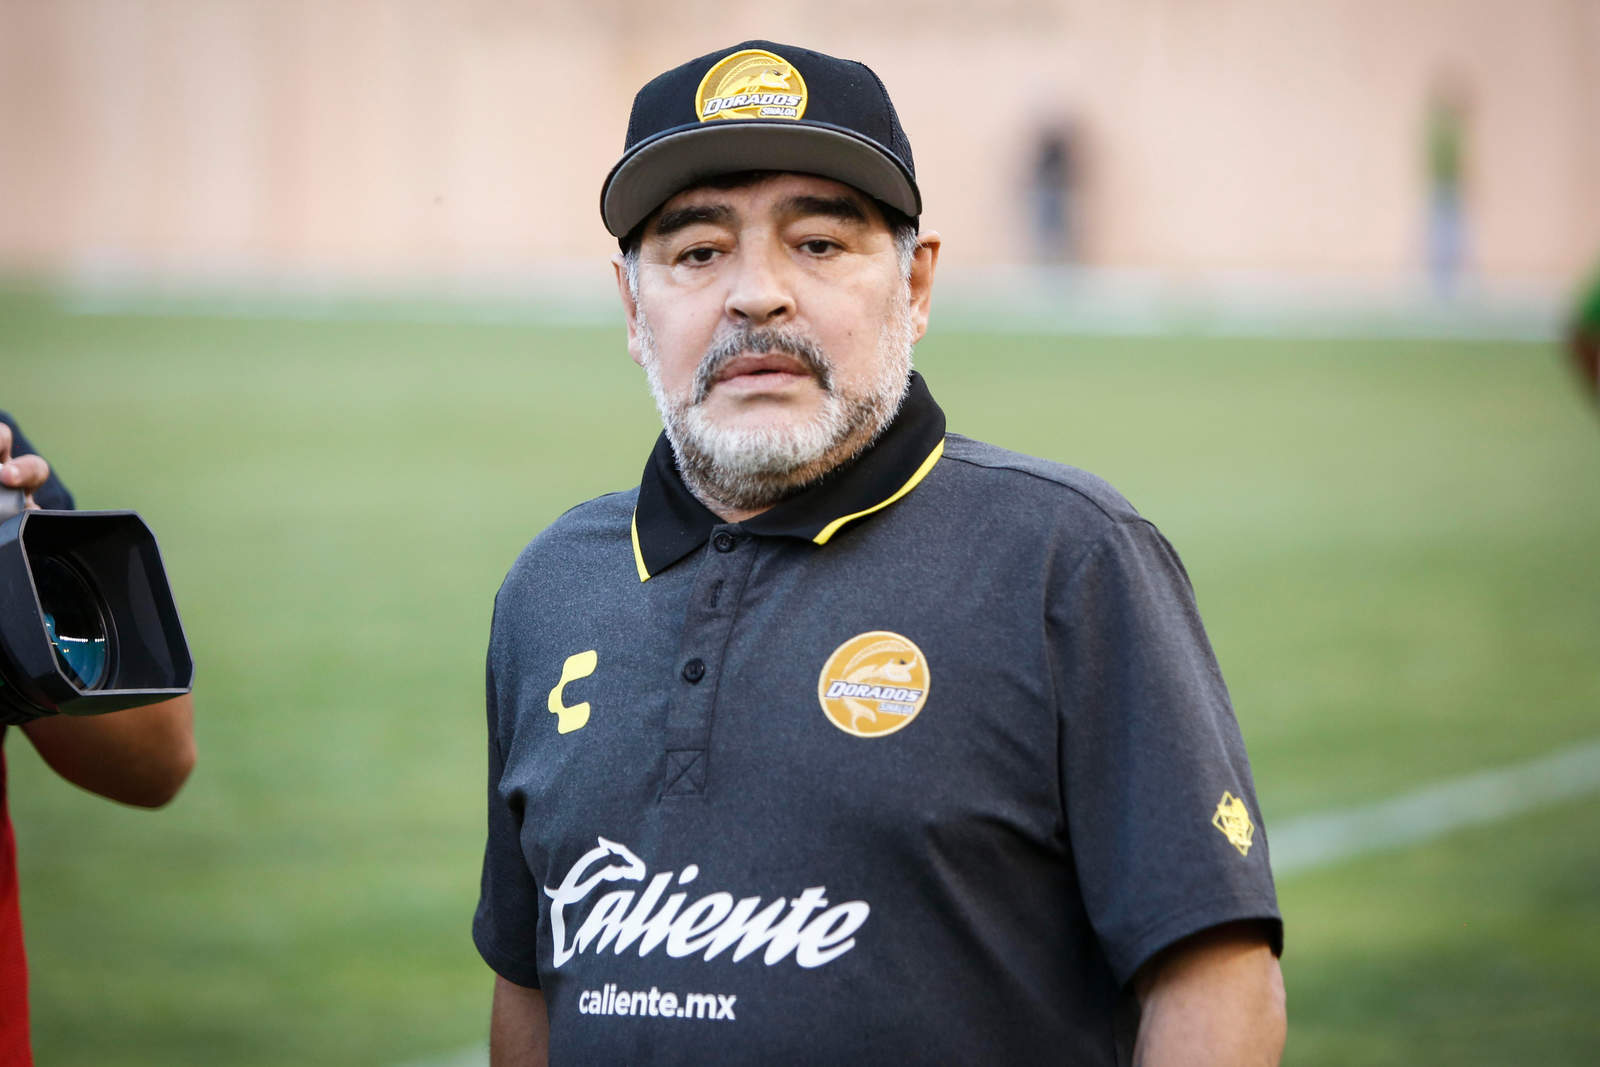 La Comisión Disciplinaria informó que el estratega no podrá estar en el segundo partido por los cuartos de final por incitar al público en contra de los Oficiales del Partido. Esta será la primera vez que Maradona sea suspendido en el futbol mexicano. (ARCHIVO)